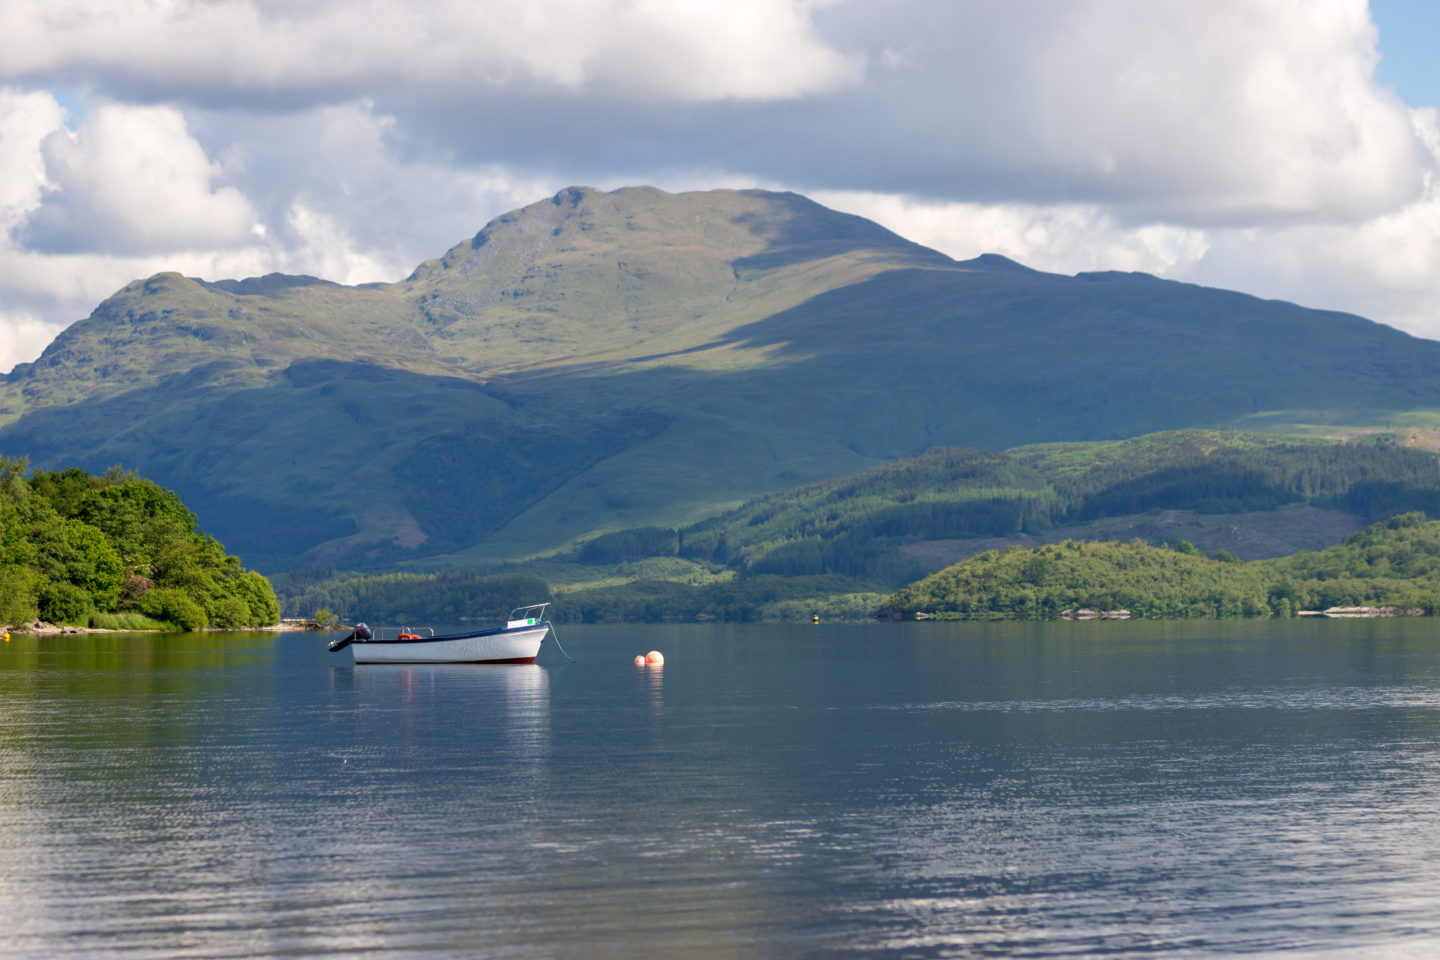 beauty spots in Scotland - Loch Lomond